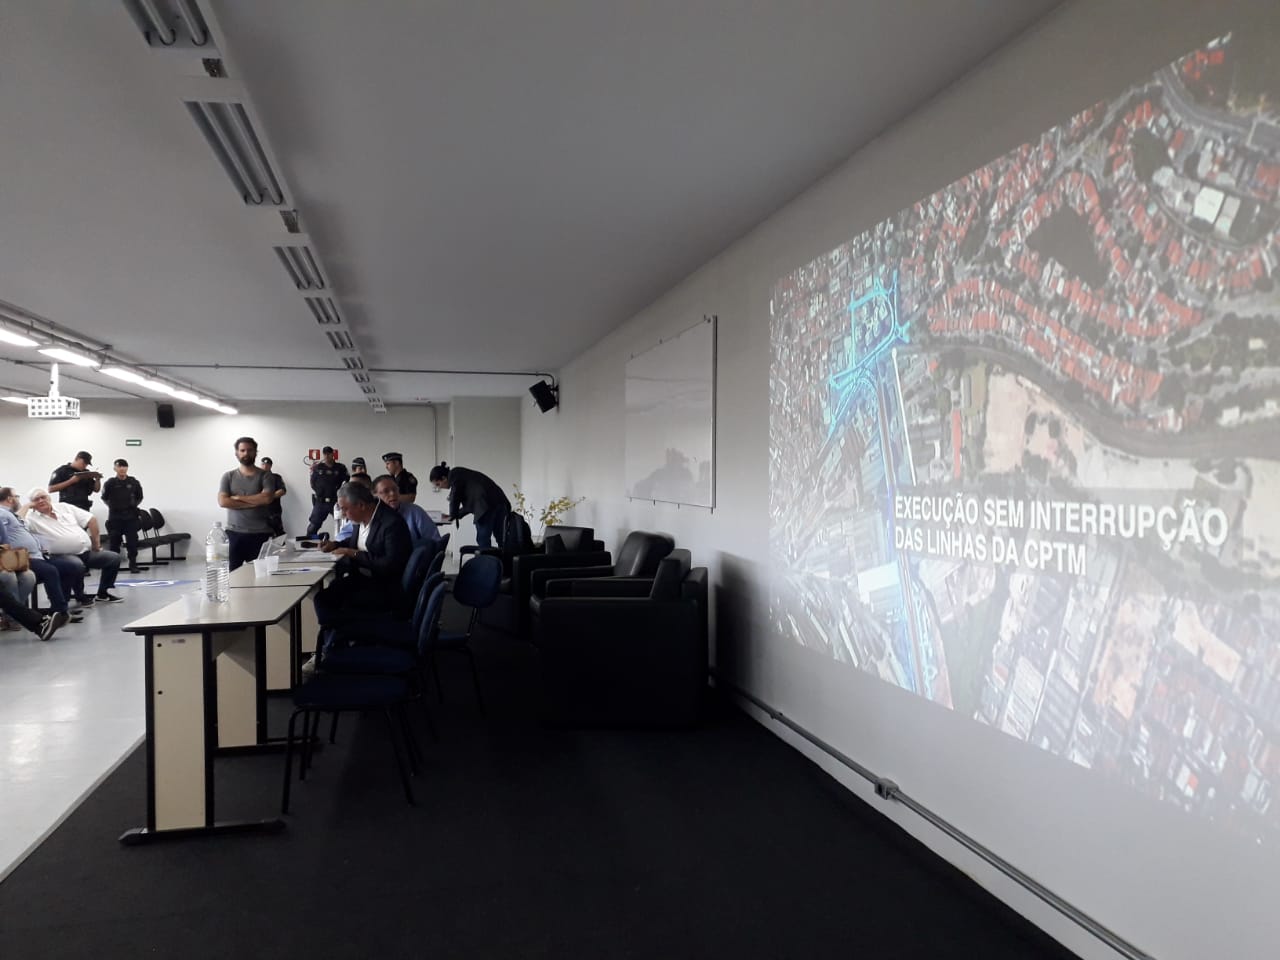 Imagem de uma sala de aula do Centro Universitário Anhanguera com pessoas reunidas ao fundo para a apresentação da audiência. À direita um telão com a projeção de slides